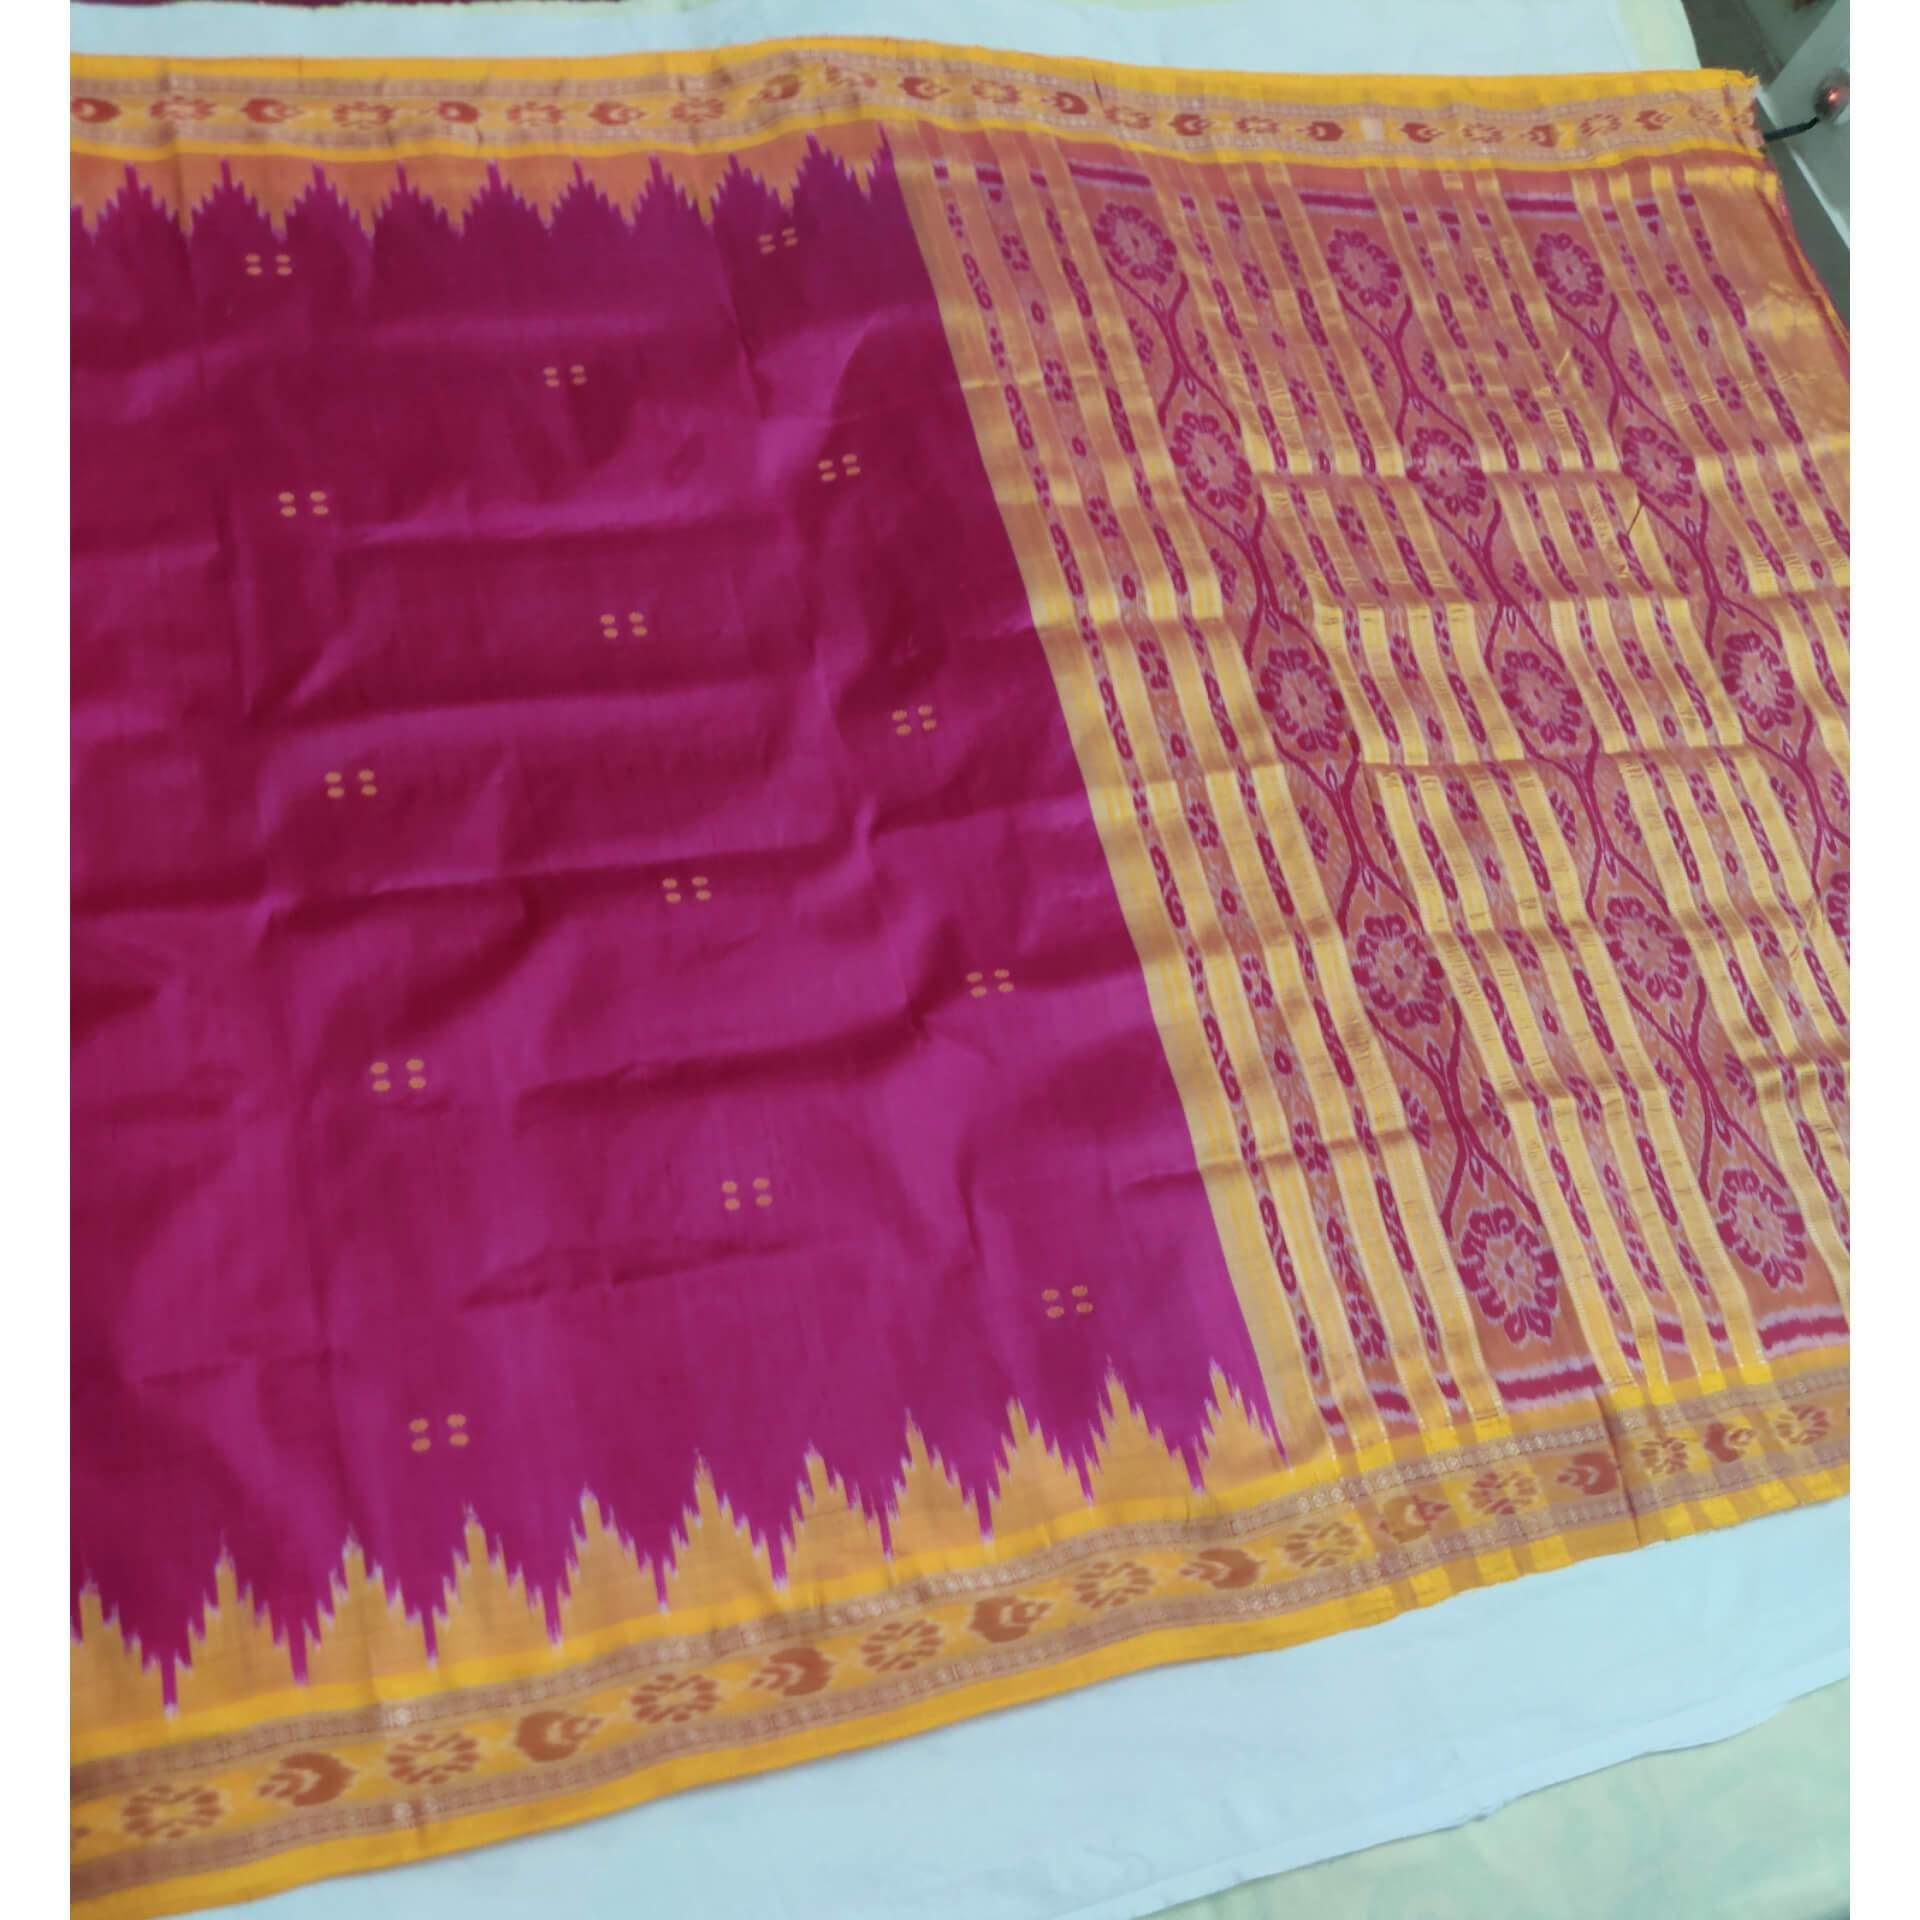 RaniPink with Golden Odisha Khandua Sambalpuri Silk Saree - Crafts Collection